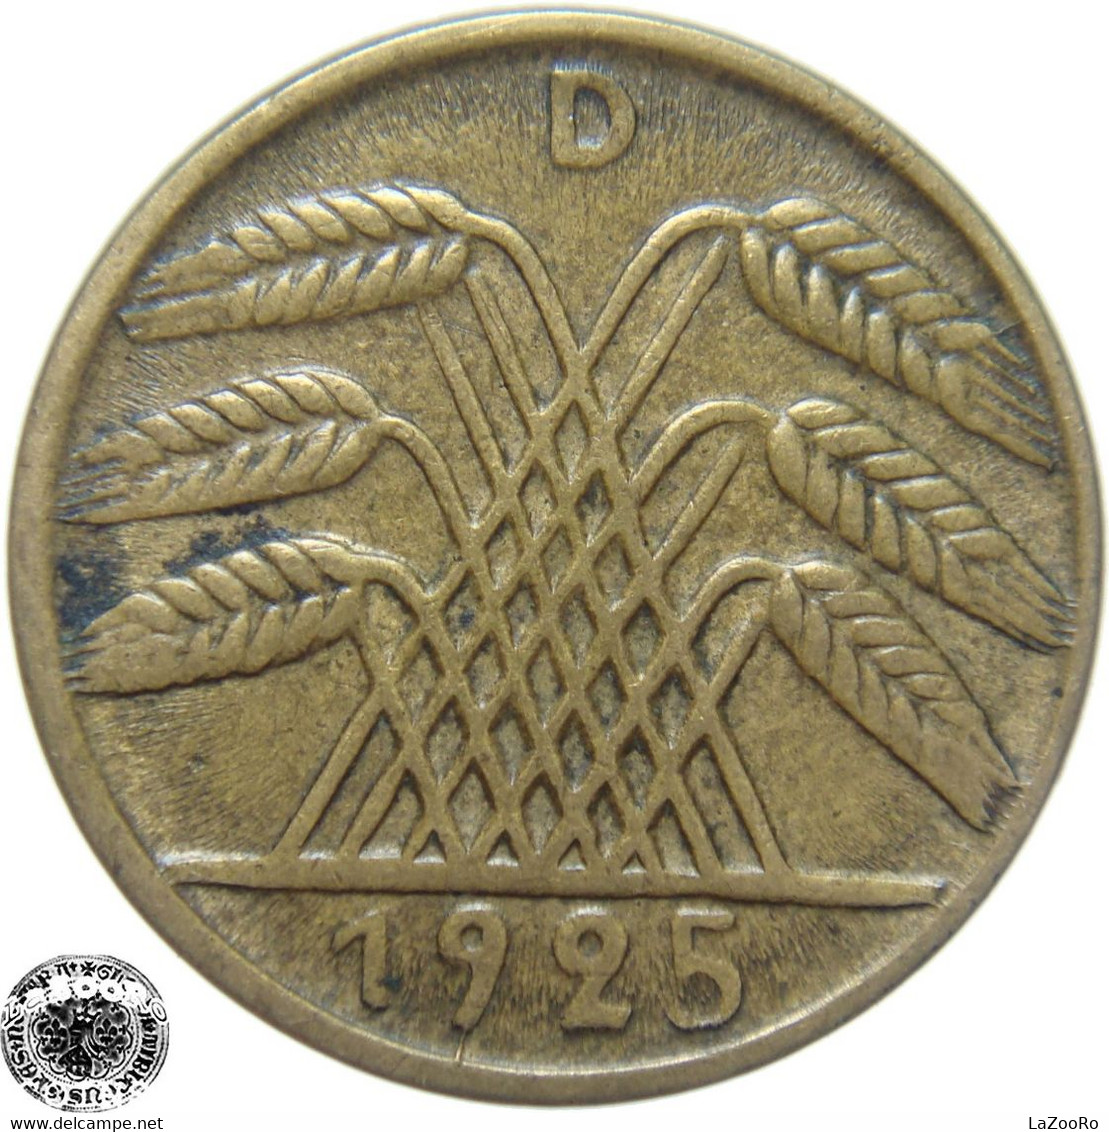 LaZooRo: Germany 5 Pfennig 1925 D XF - 5 Rentenpfennig & 5 Reichspfennig